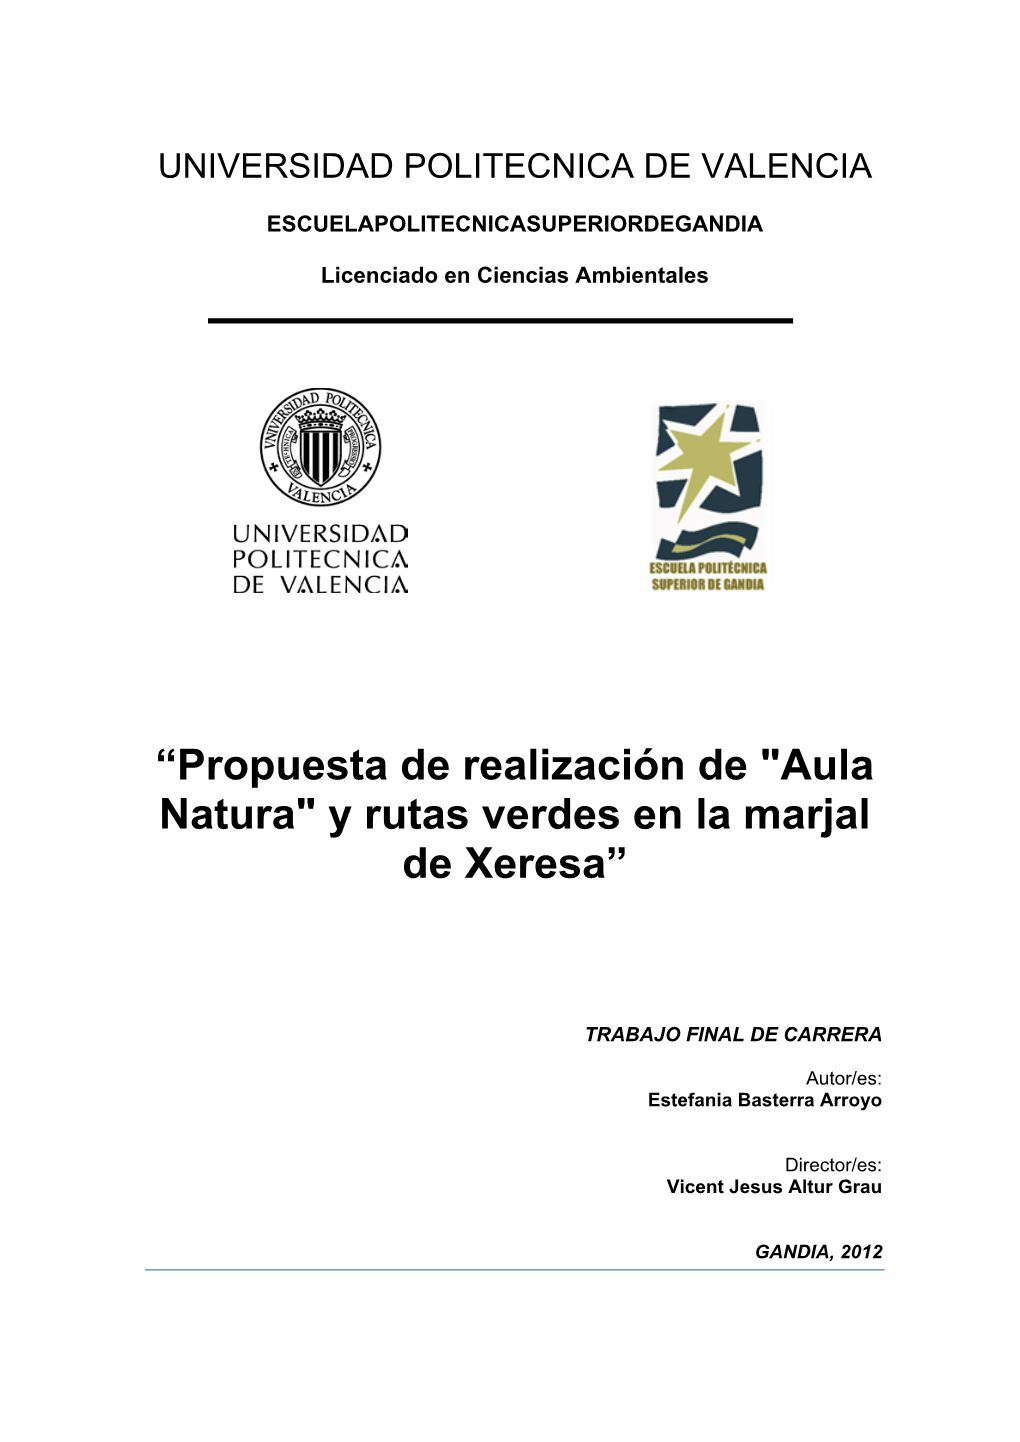 “Propuesta De Realización De "Aula Natura" Y Rutas Verdes En La Marjal De Xeresa”